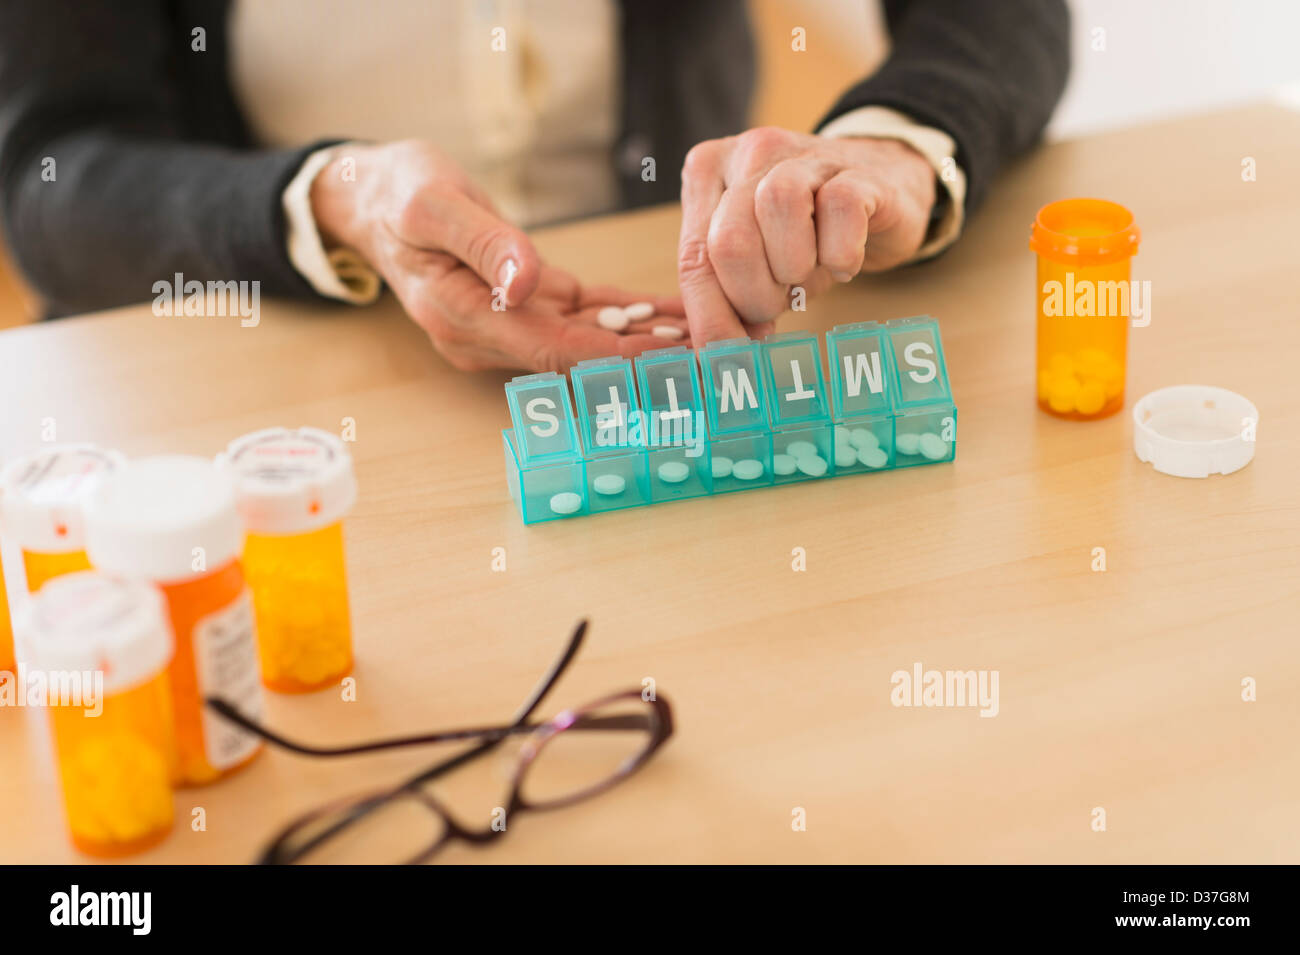 USA, New Jersey, Jersey City, Senior woman dozing pills Stock Photo